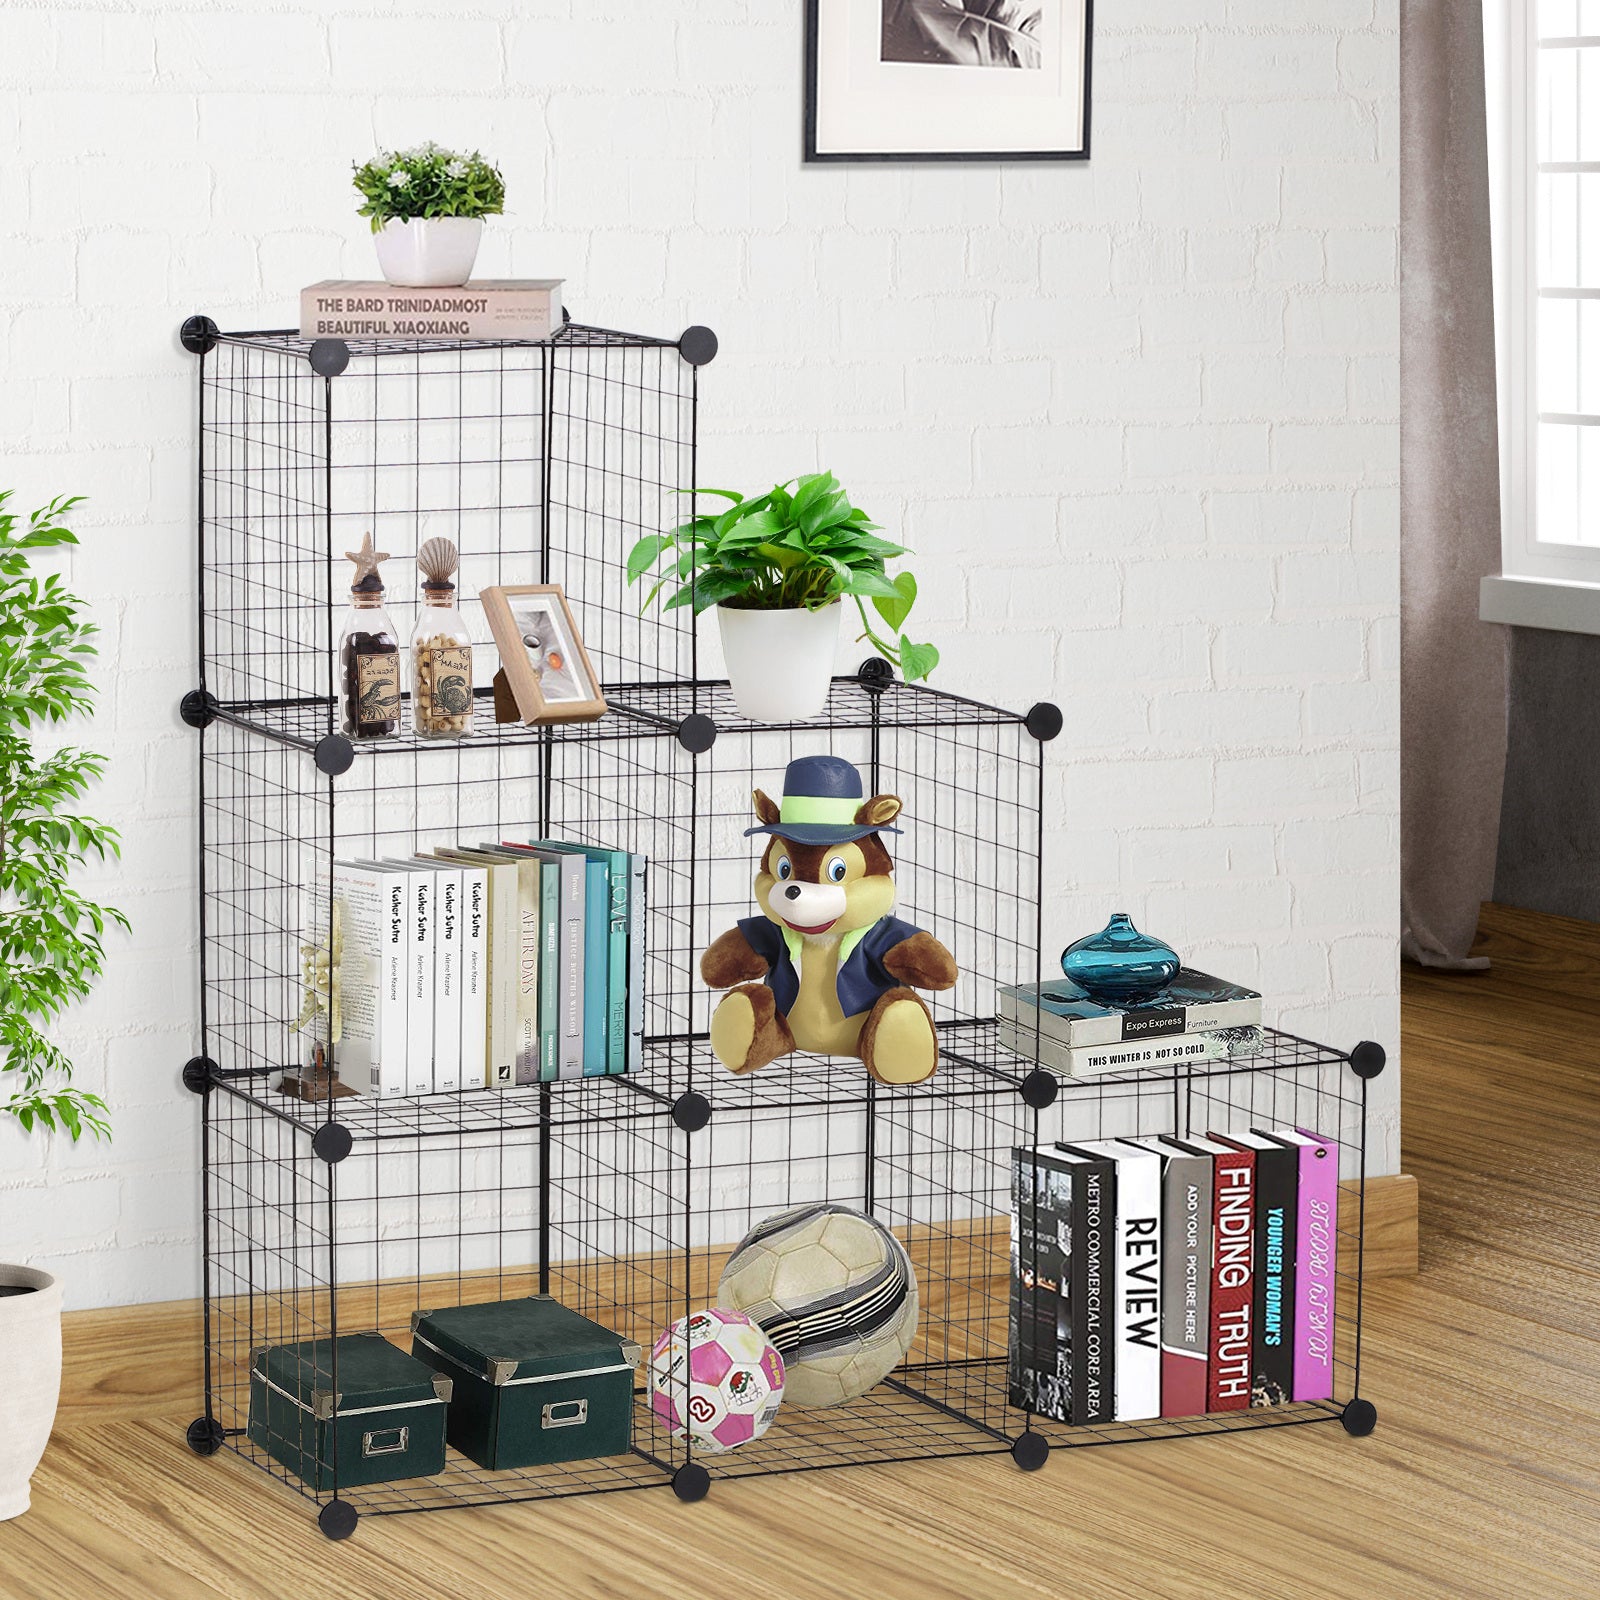 HOMCOM DIY 6 Cube Metal Wire Rack Interlocking Storage Cabinet Living Room Organiser Display Shelves Black - Inspirely